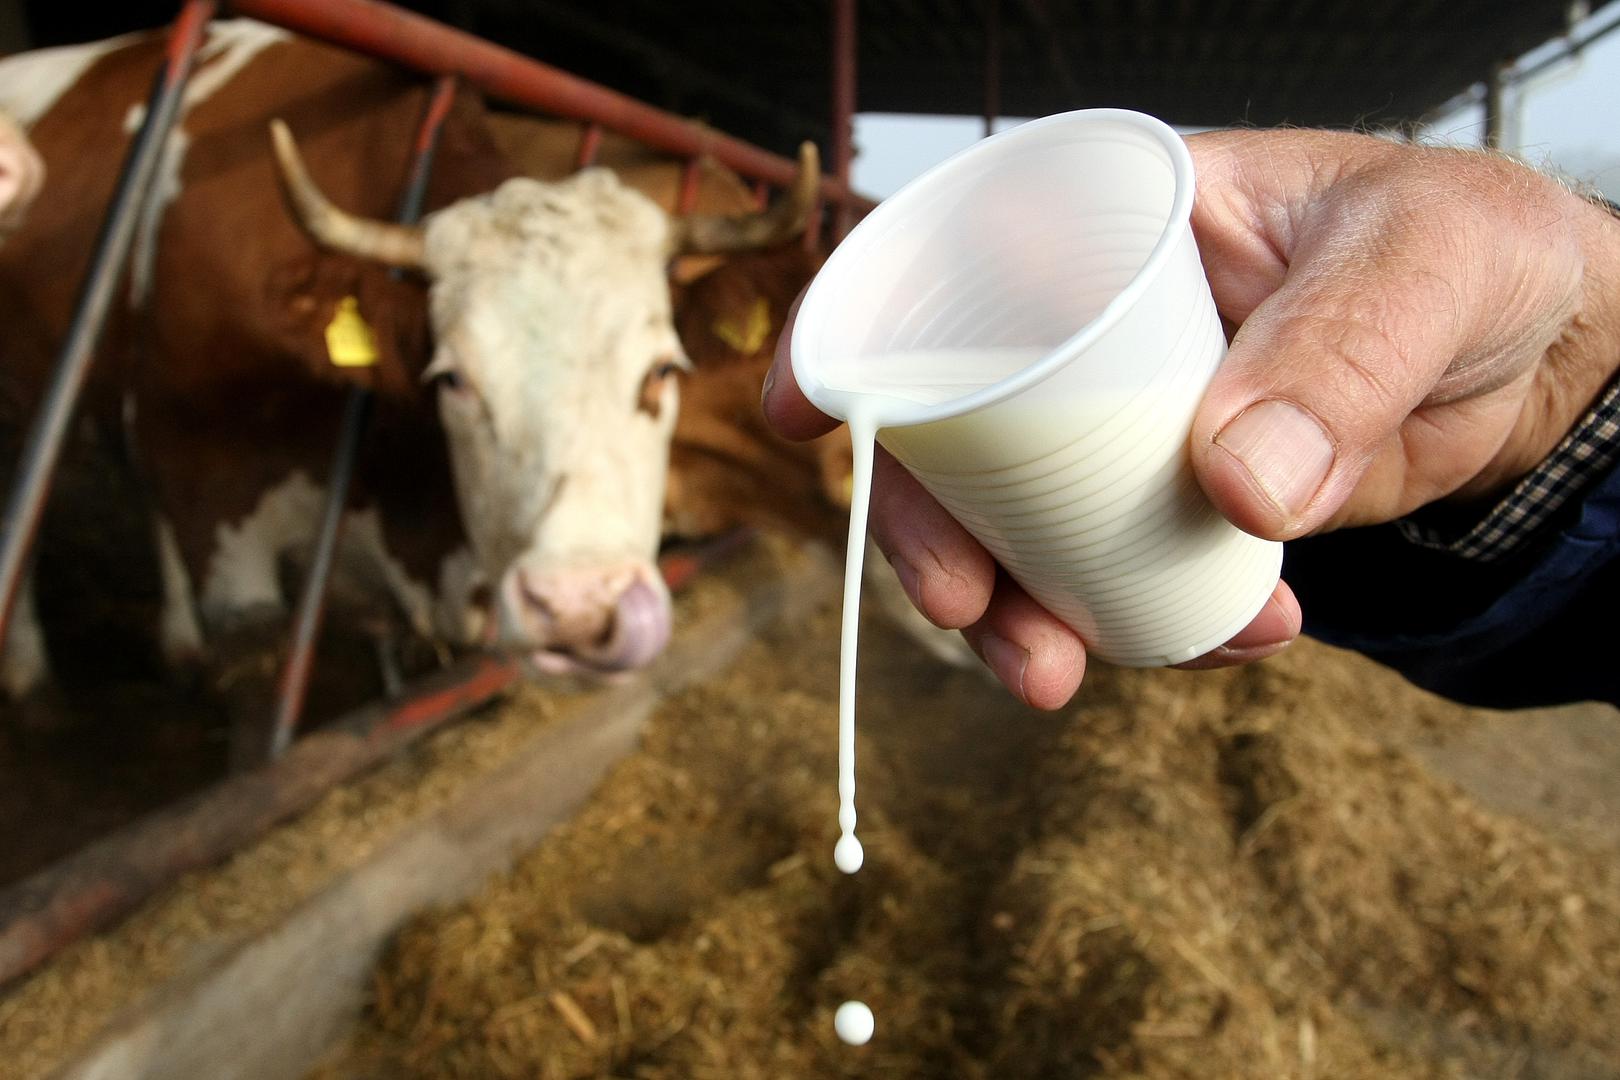 Svježe kravlje mlijeko – Postoji uvriježen stav da je svježe kravlje mlijeko zdravije i nutritivno bogatije od pasteriziranog, ali je ipak vrlo rizično za dječji probavni sustav. Mlijeko koje nije pasterizirano rizičnije je za razvoj bolesti kod djece jer njihov imunološki sustav nije toliko razvijen kao kod odraslih ljudi, tvrde nutricionisti.